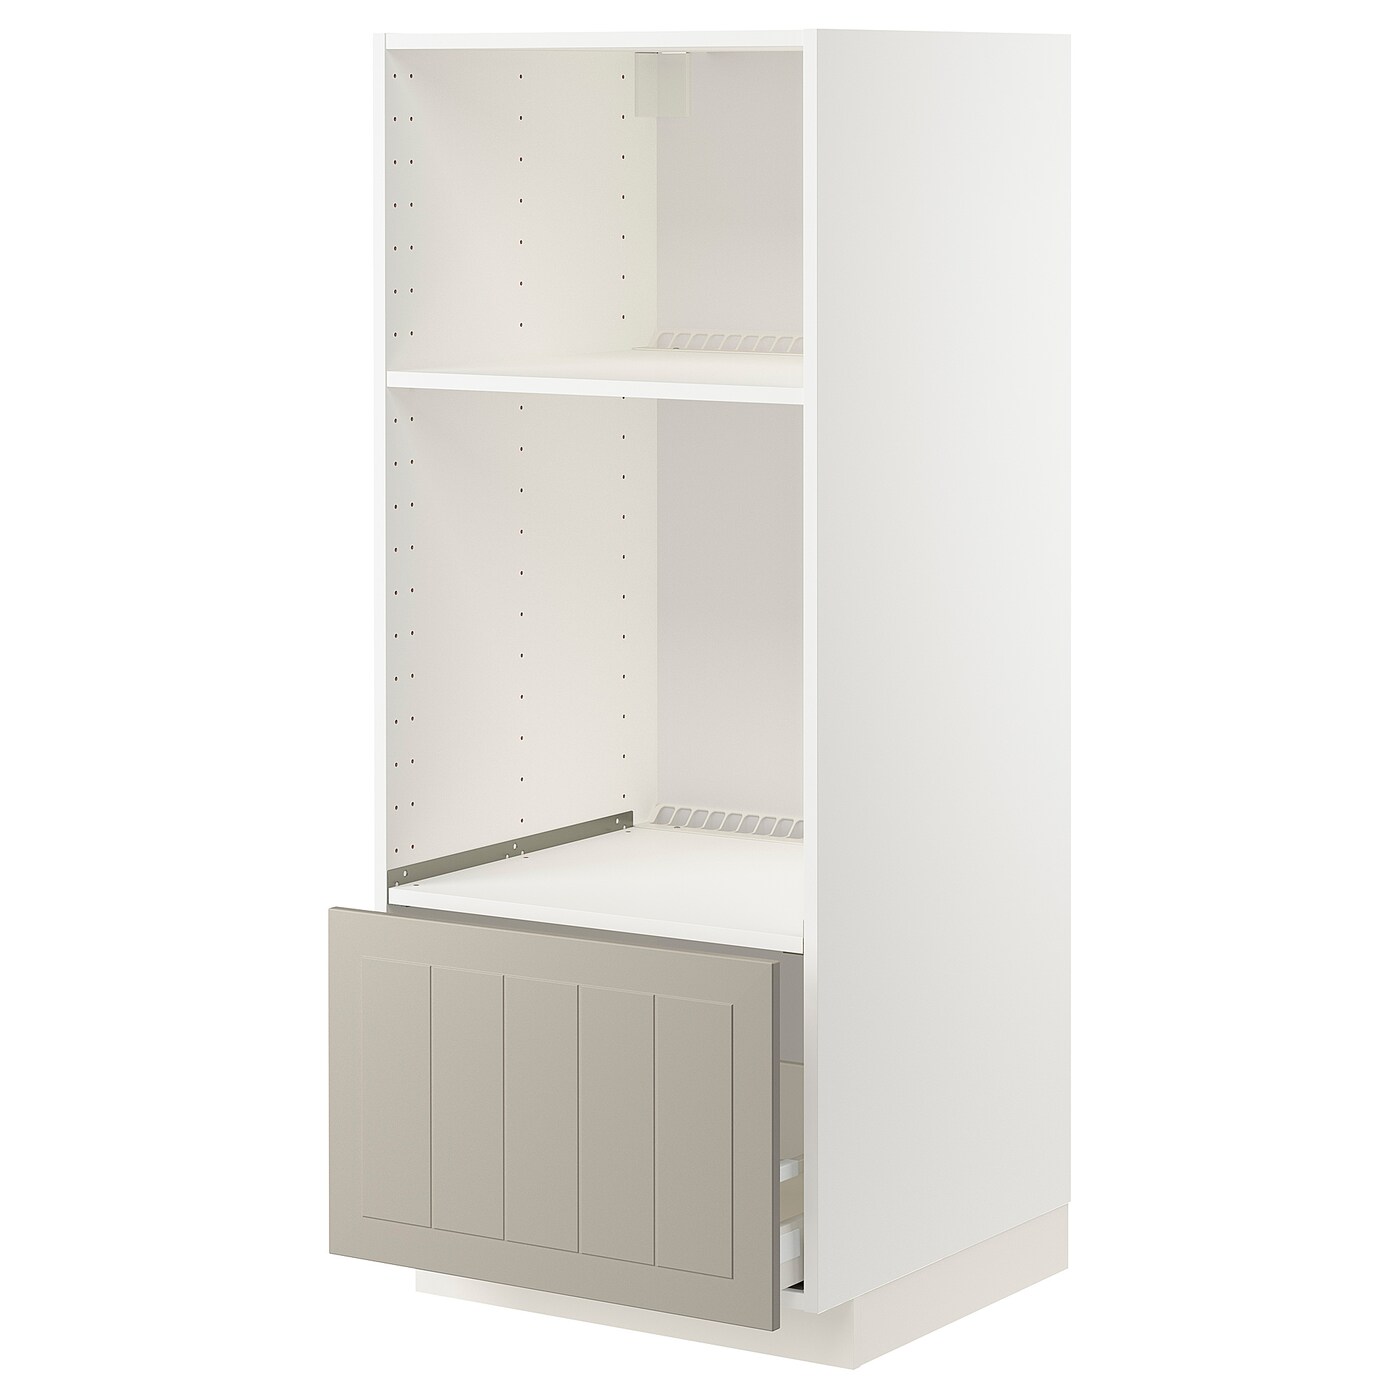 Напольный шкаф  - IKEA METOD MAXIMERA, 148x61,9x60см, белый/светло-серый, МЕТОД МАКСИМЕРА ИКЕА